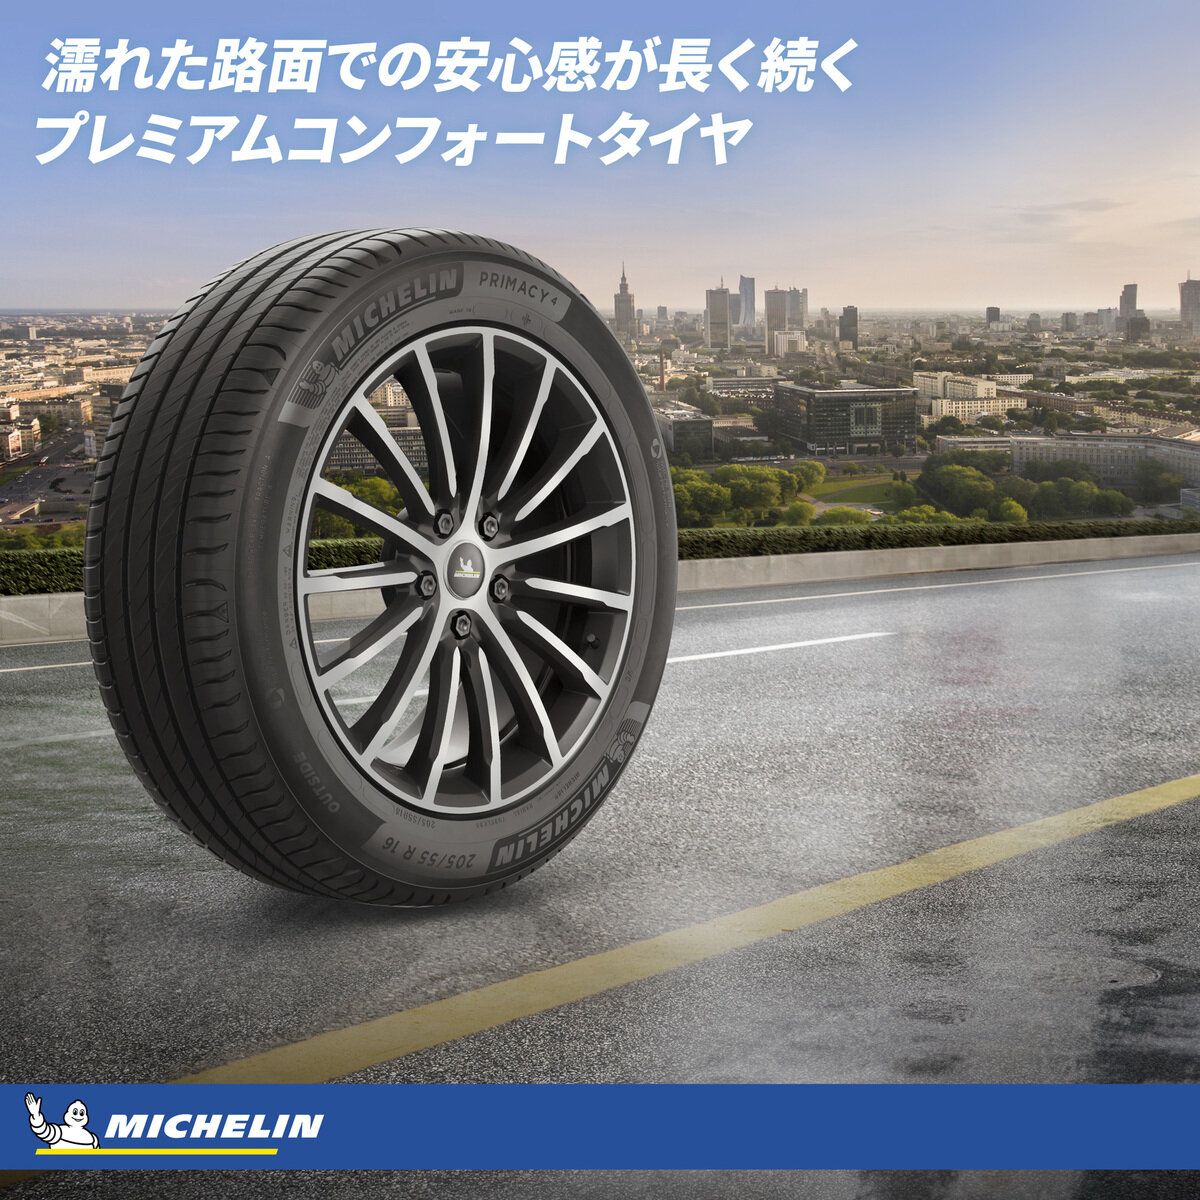 Michelin 245/45 R17 99Y XL TL PRIMACY 4+ MI | Costco Japan